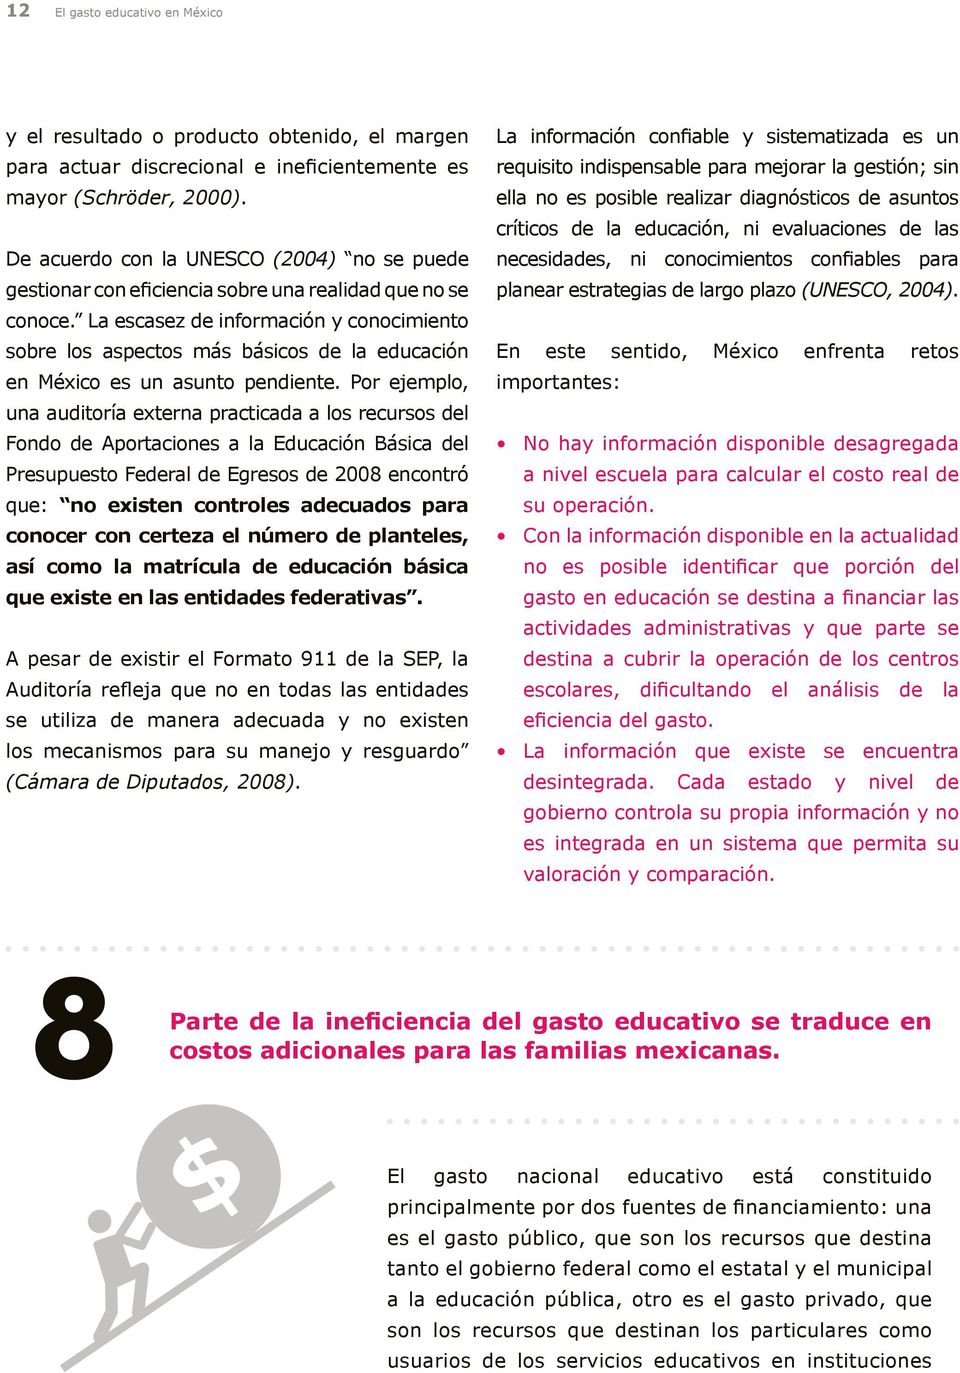 La escasez de información y conocimiento sobre los aspectos más básicos de la educación en México es un asunto pendiente.